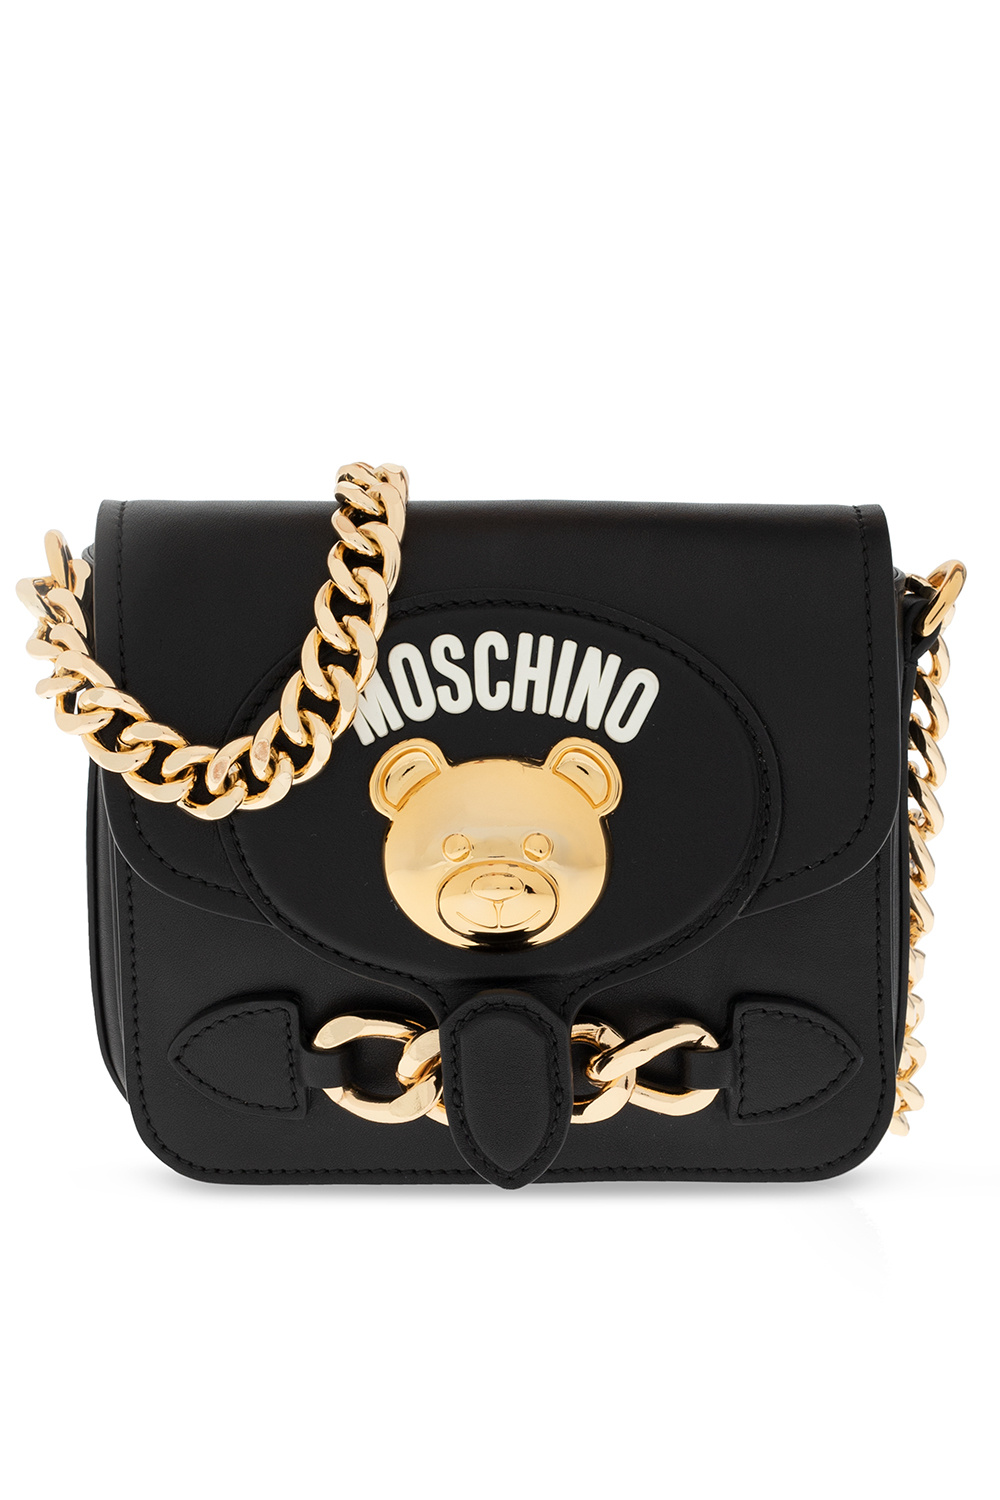 Moschino Teddy bear belt bag, Women's Bags